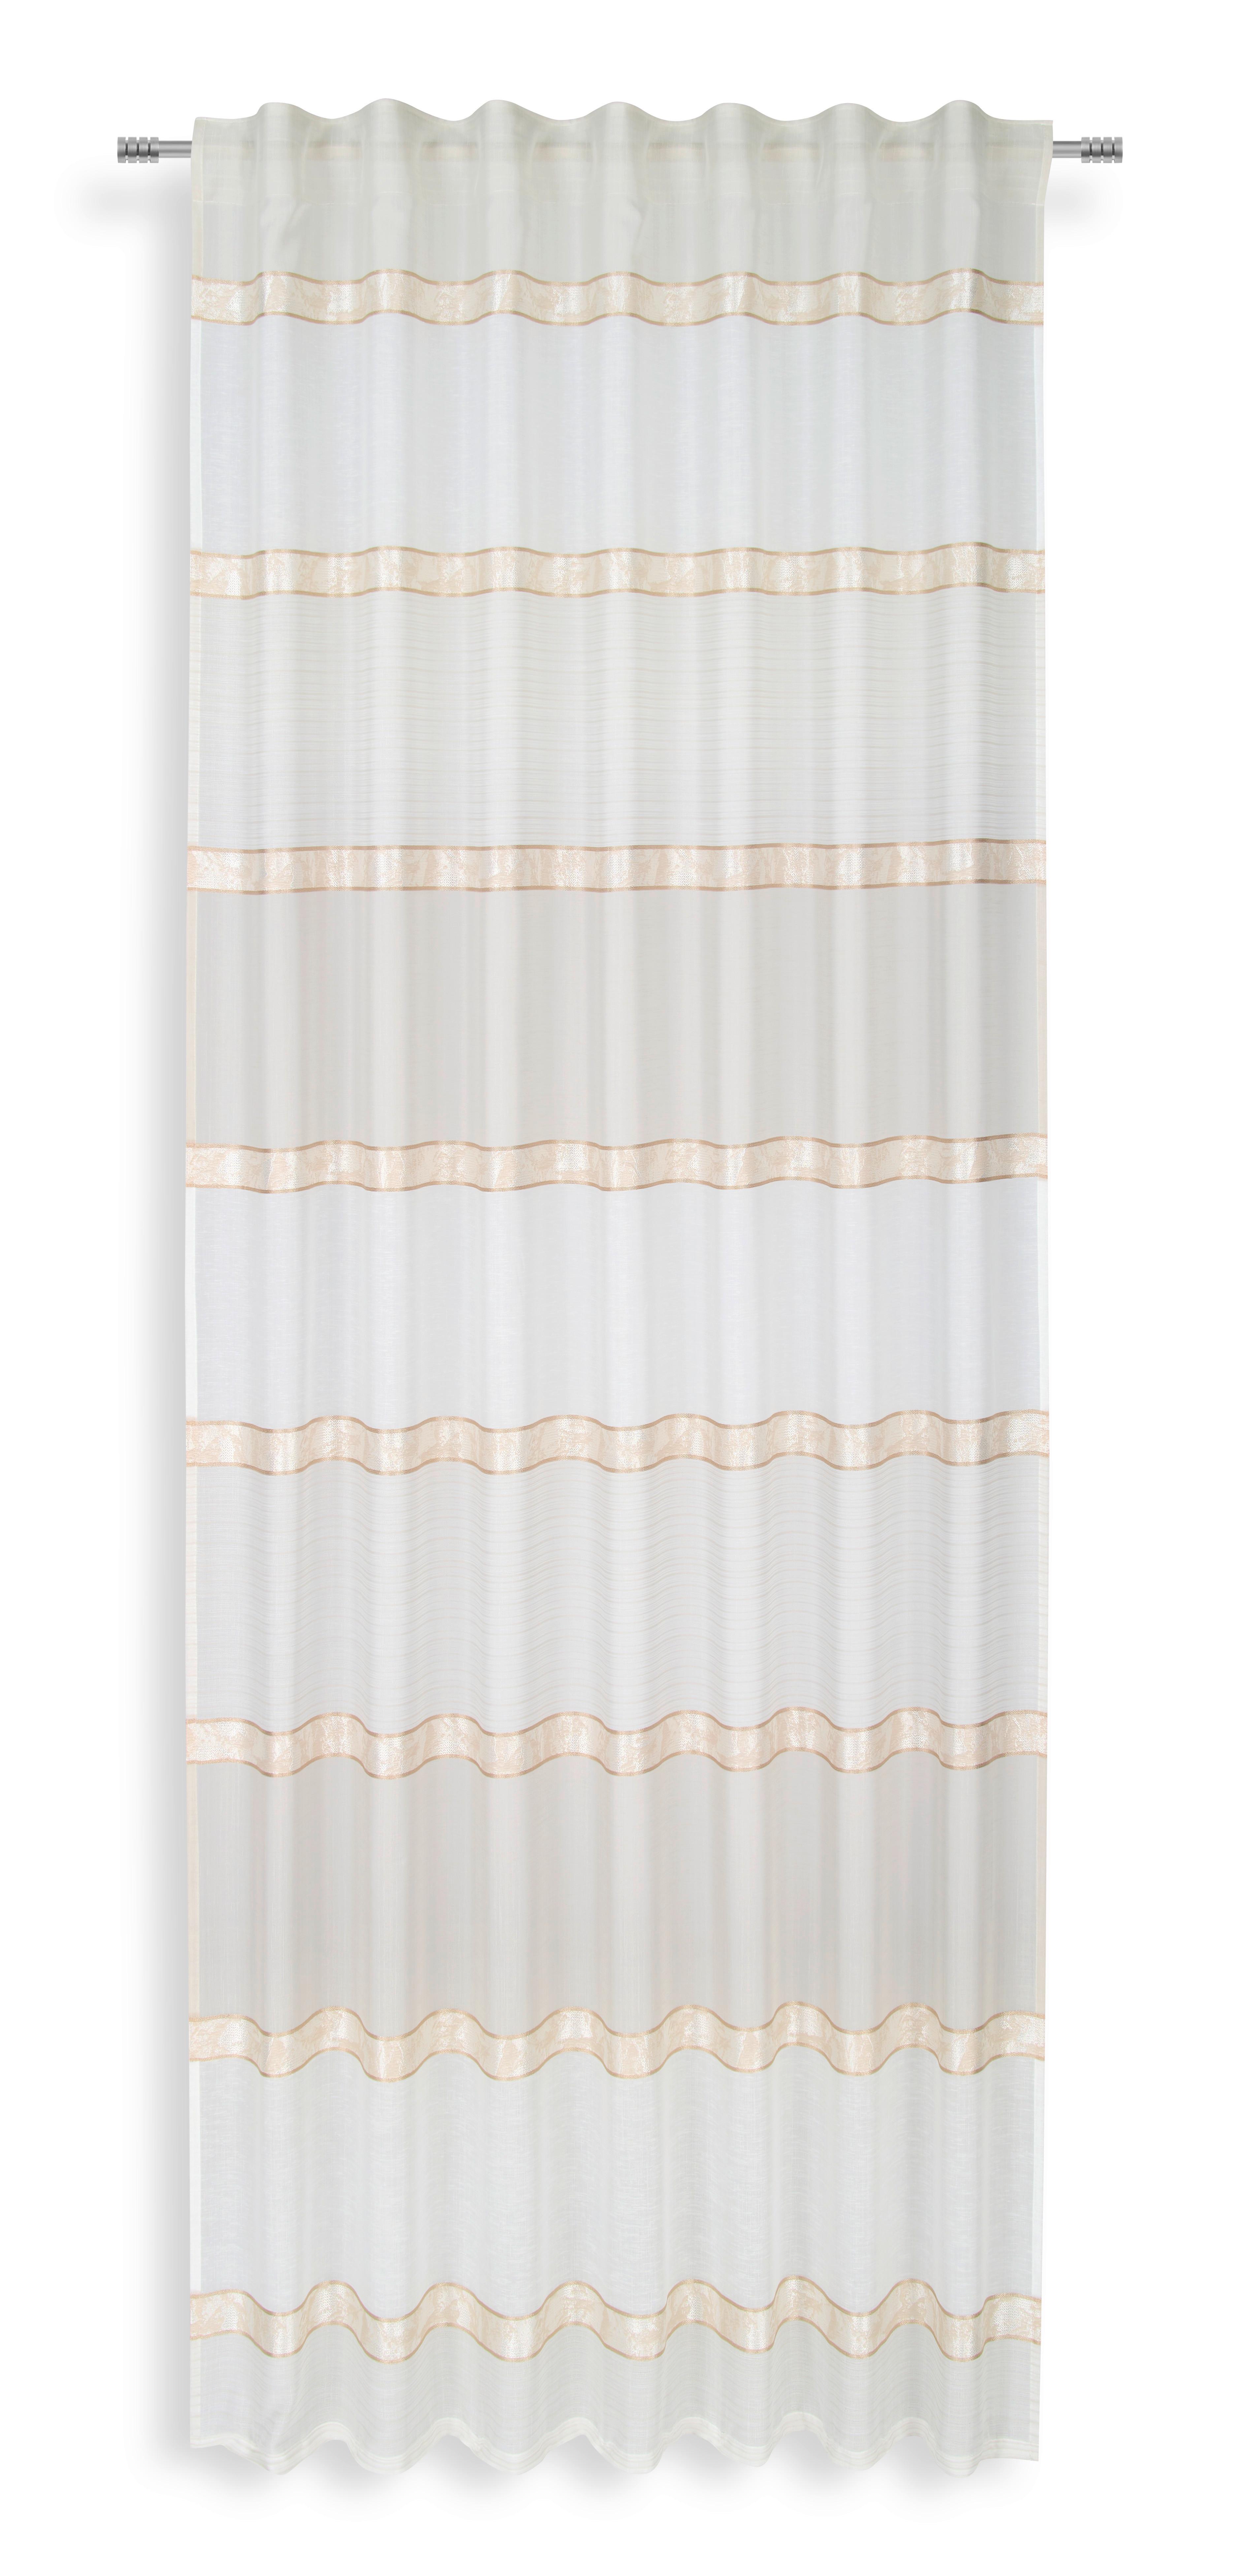 Készfüggöny Elina - Fehér, modern, Textil (140/245cm) - Luca Bessoni